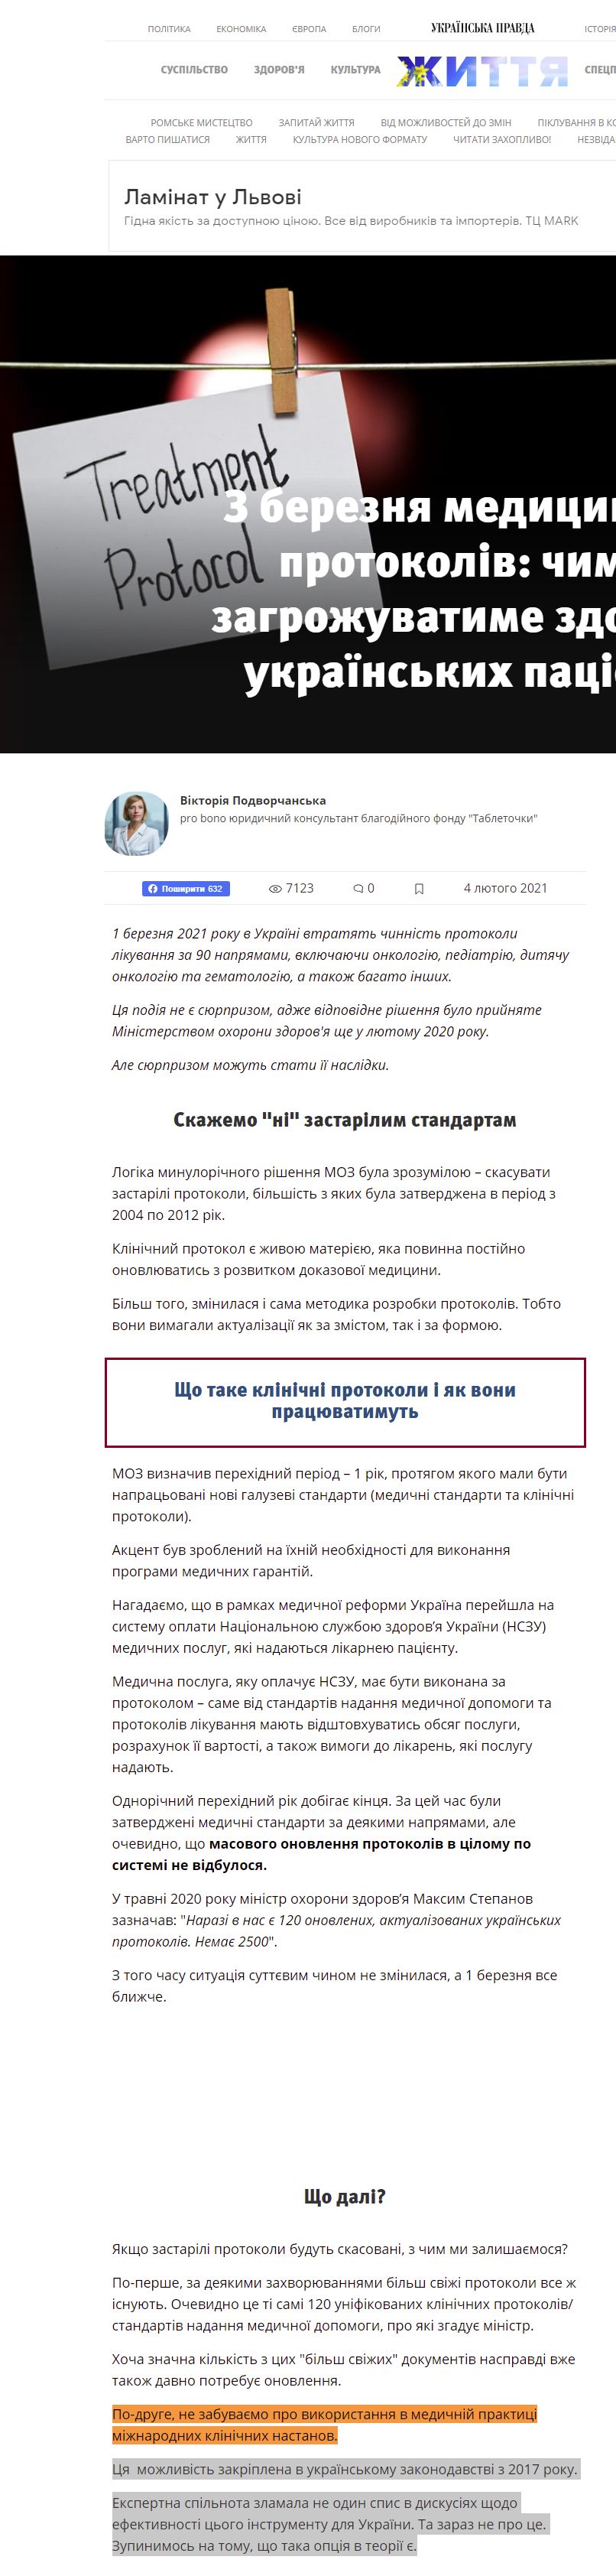 https://life.pravda.com.ua/columns/2021/02/4/243842/